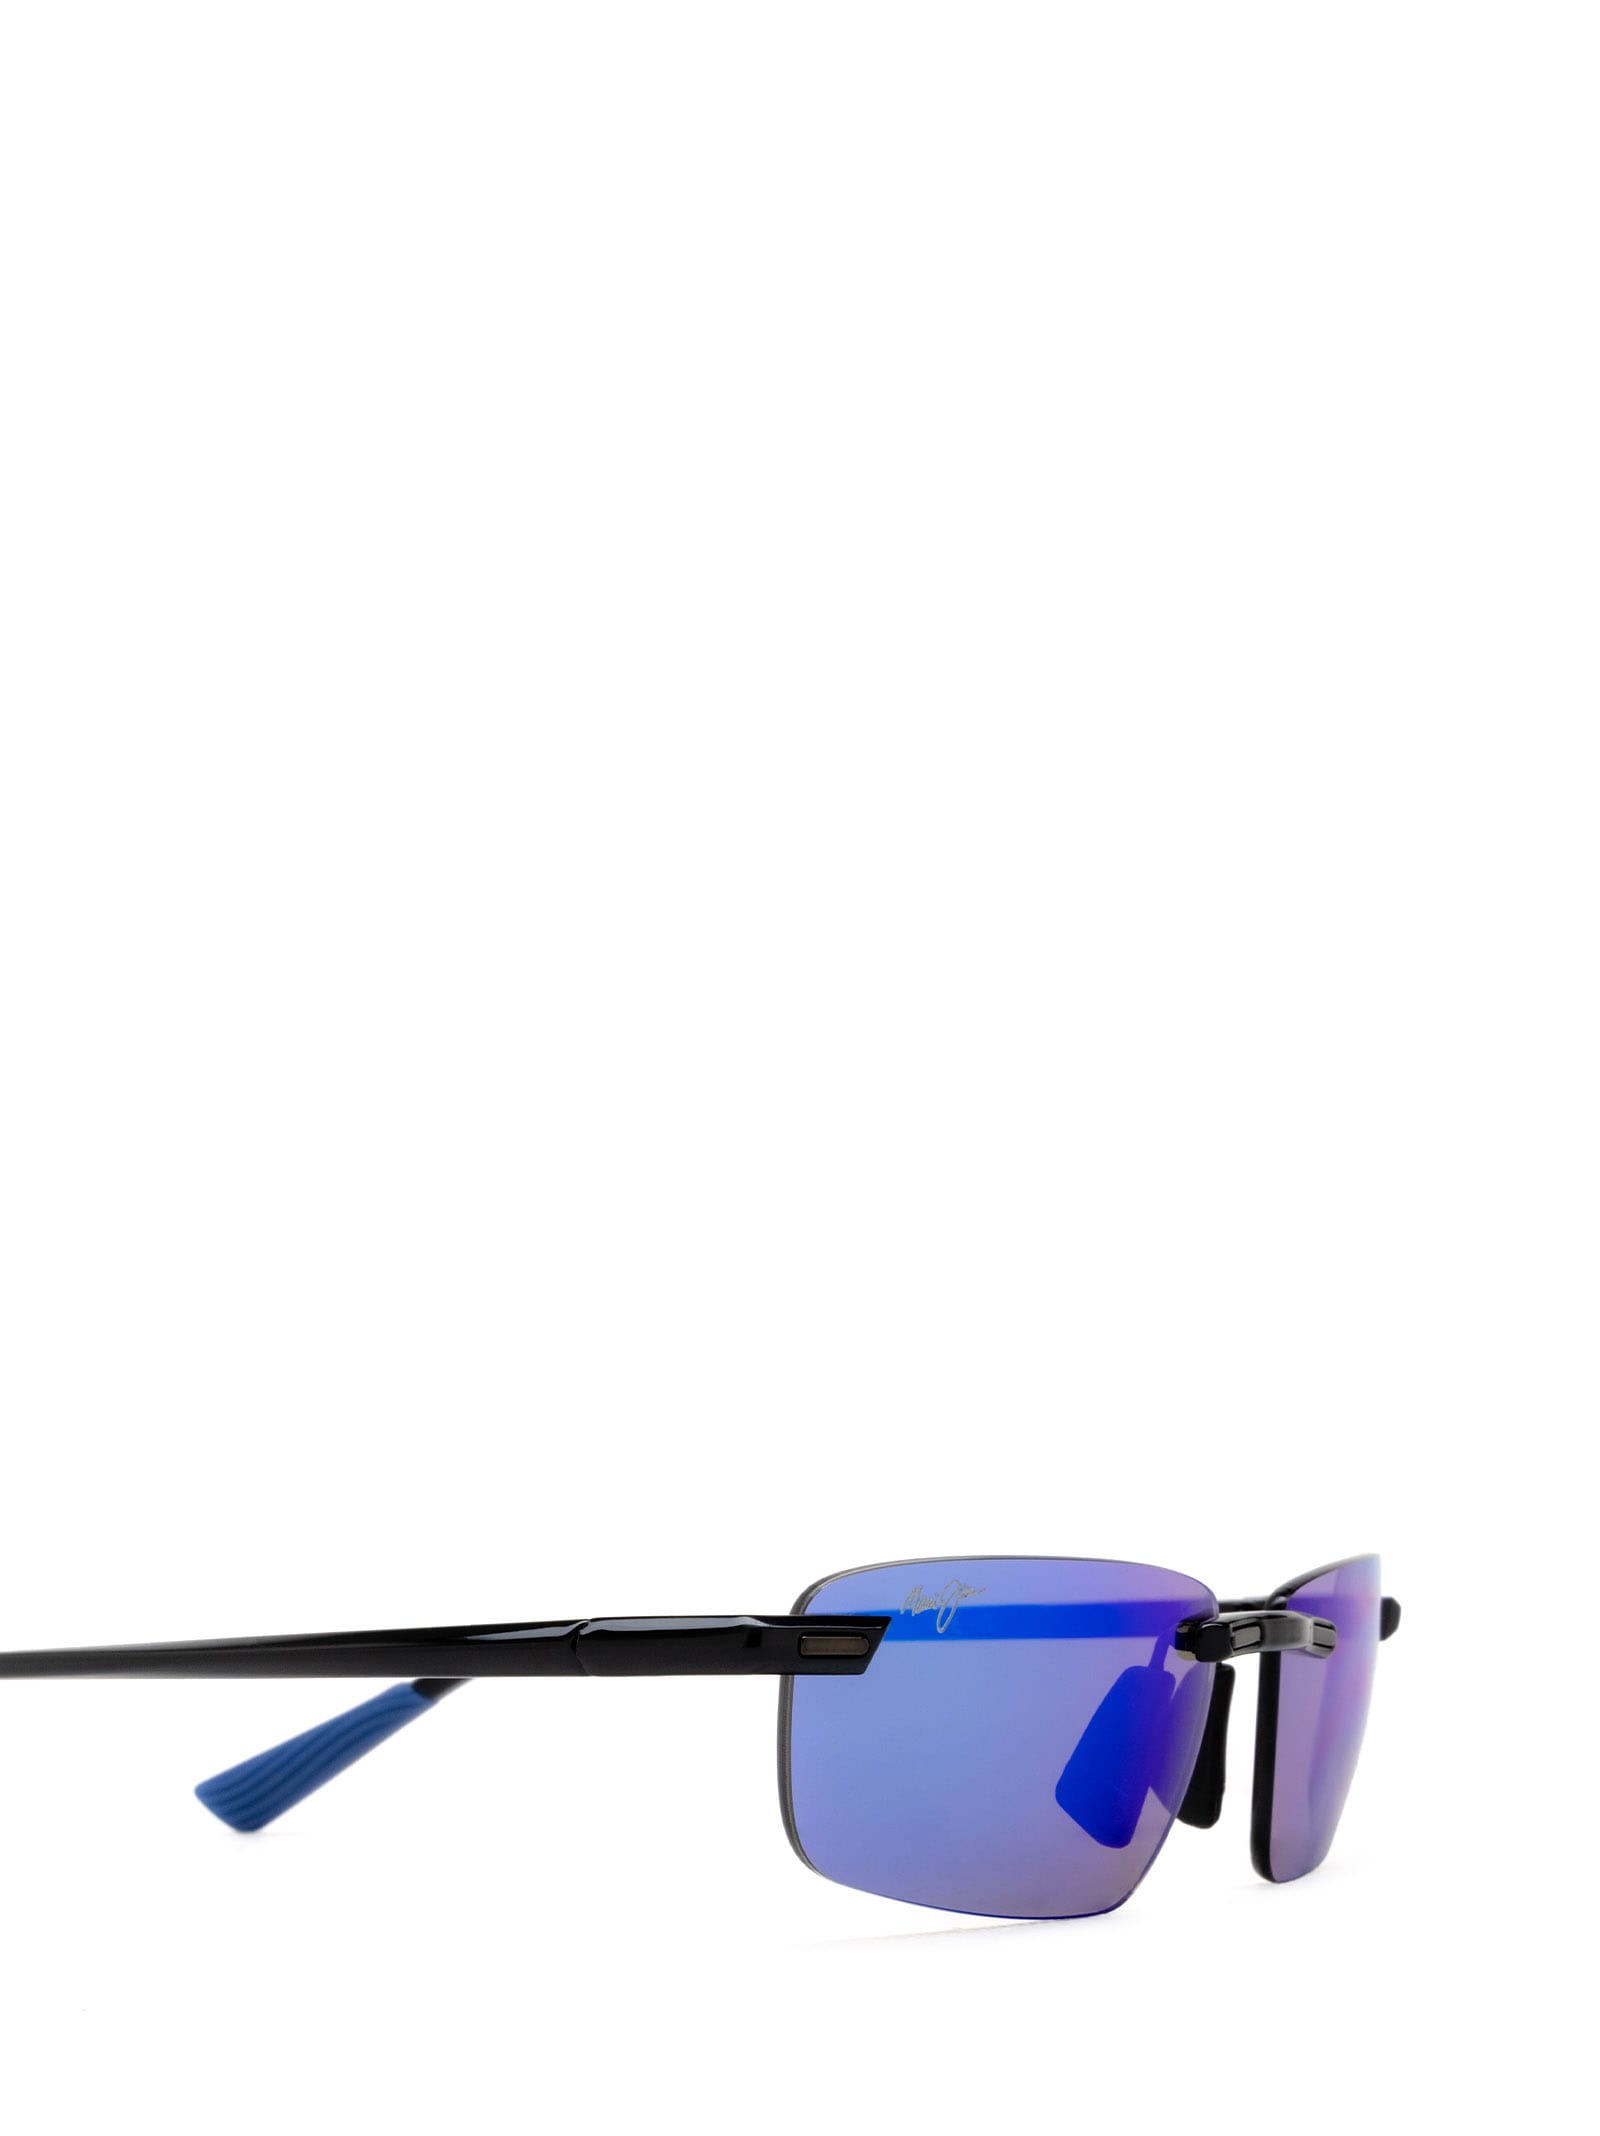 Shop Maui Jim Mj630 Shiny Black W/ Blue Sunglasses